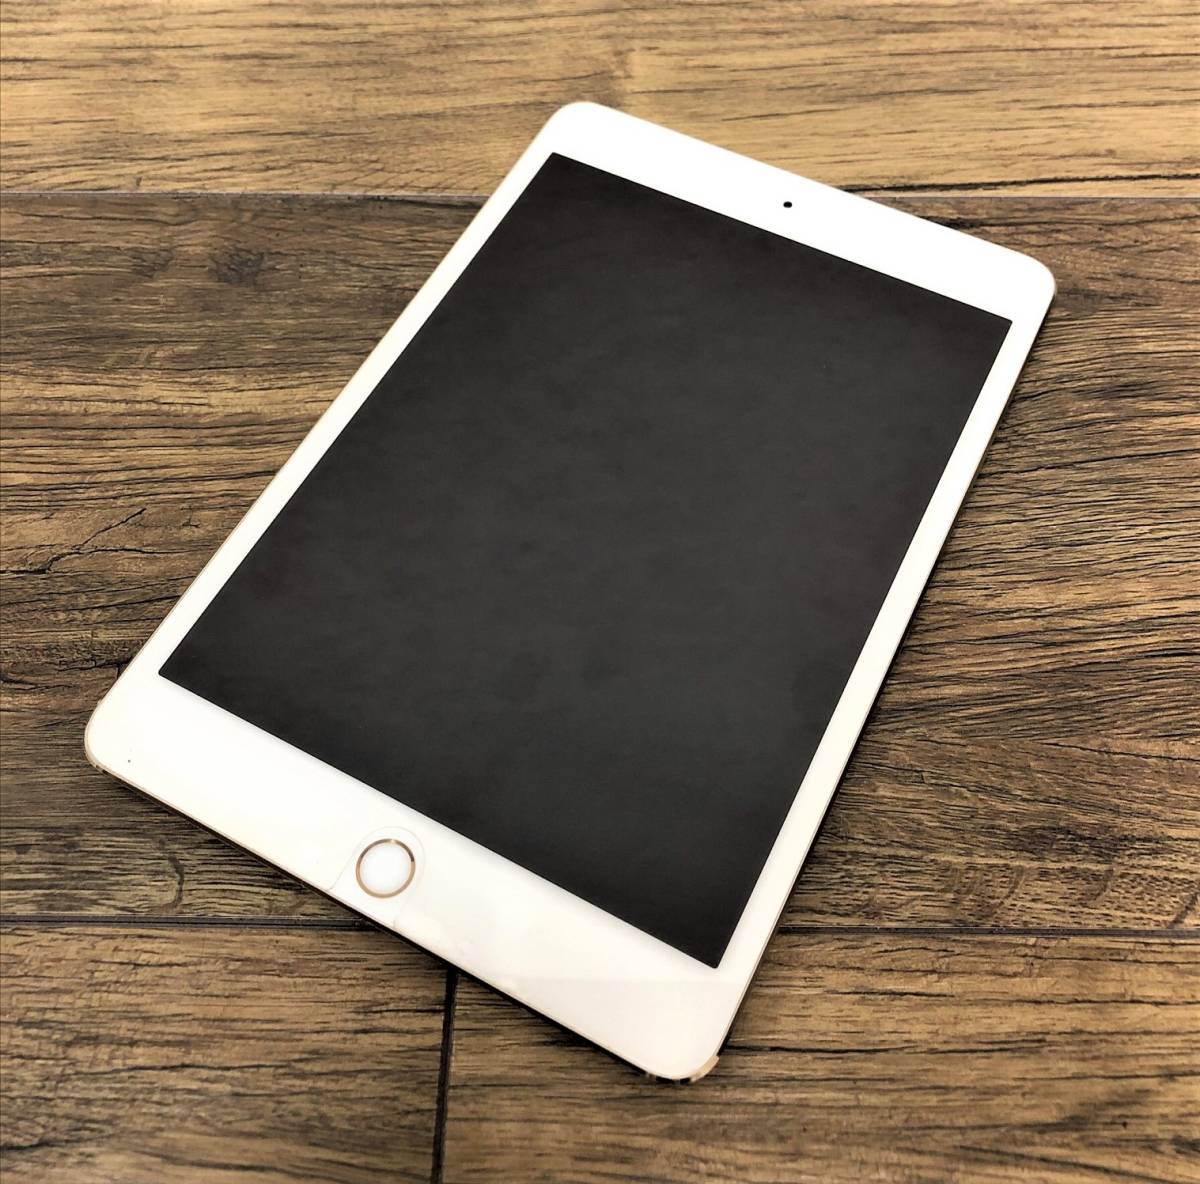 iPad mini 4 Wi-Fi 128GB Silver 中古美品です- JChere雅虎拍卖代购